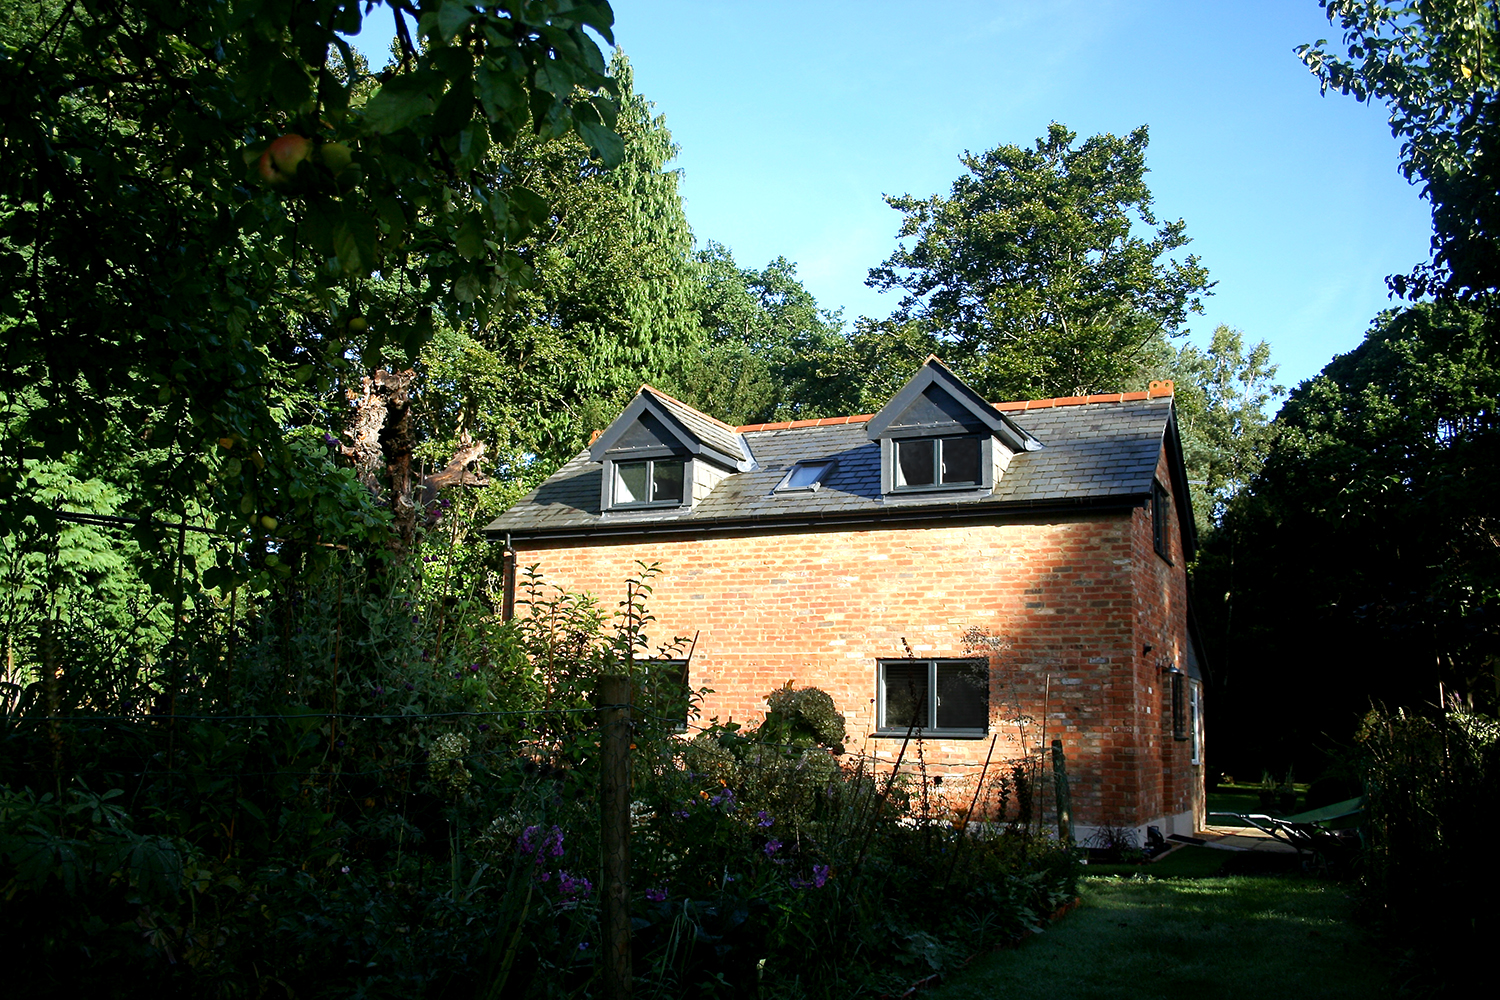 Guest House, Surrey